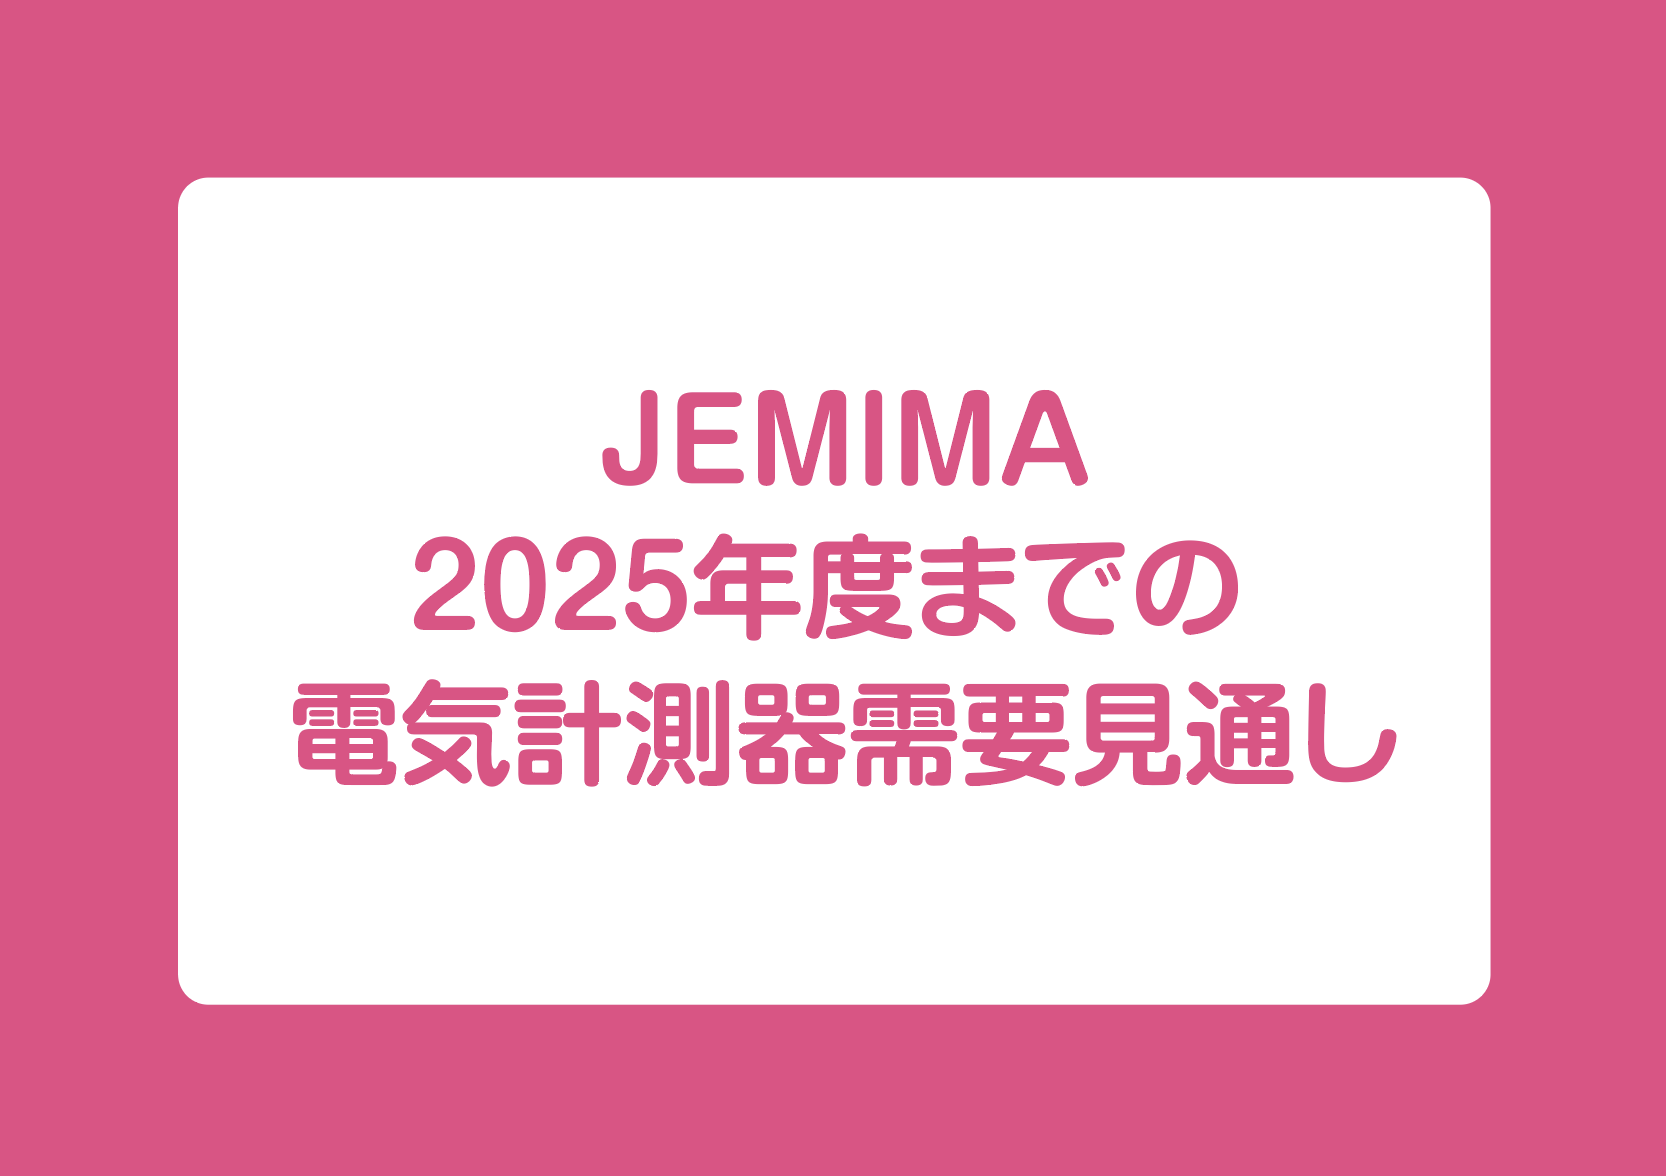 JEMIMA 2025年度までの 電気計測器需要見通しの画像